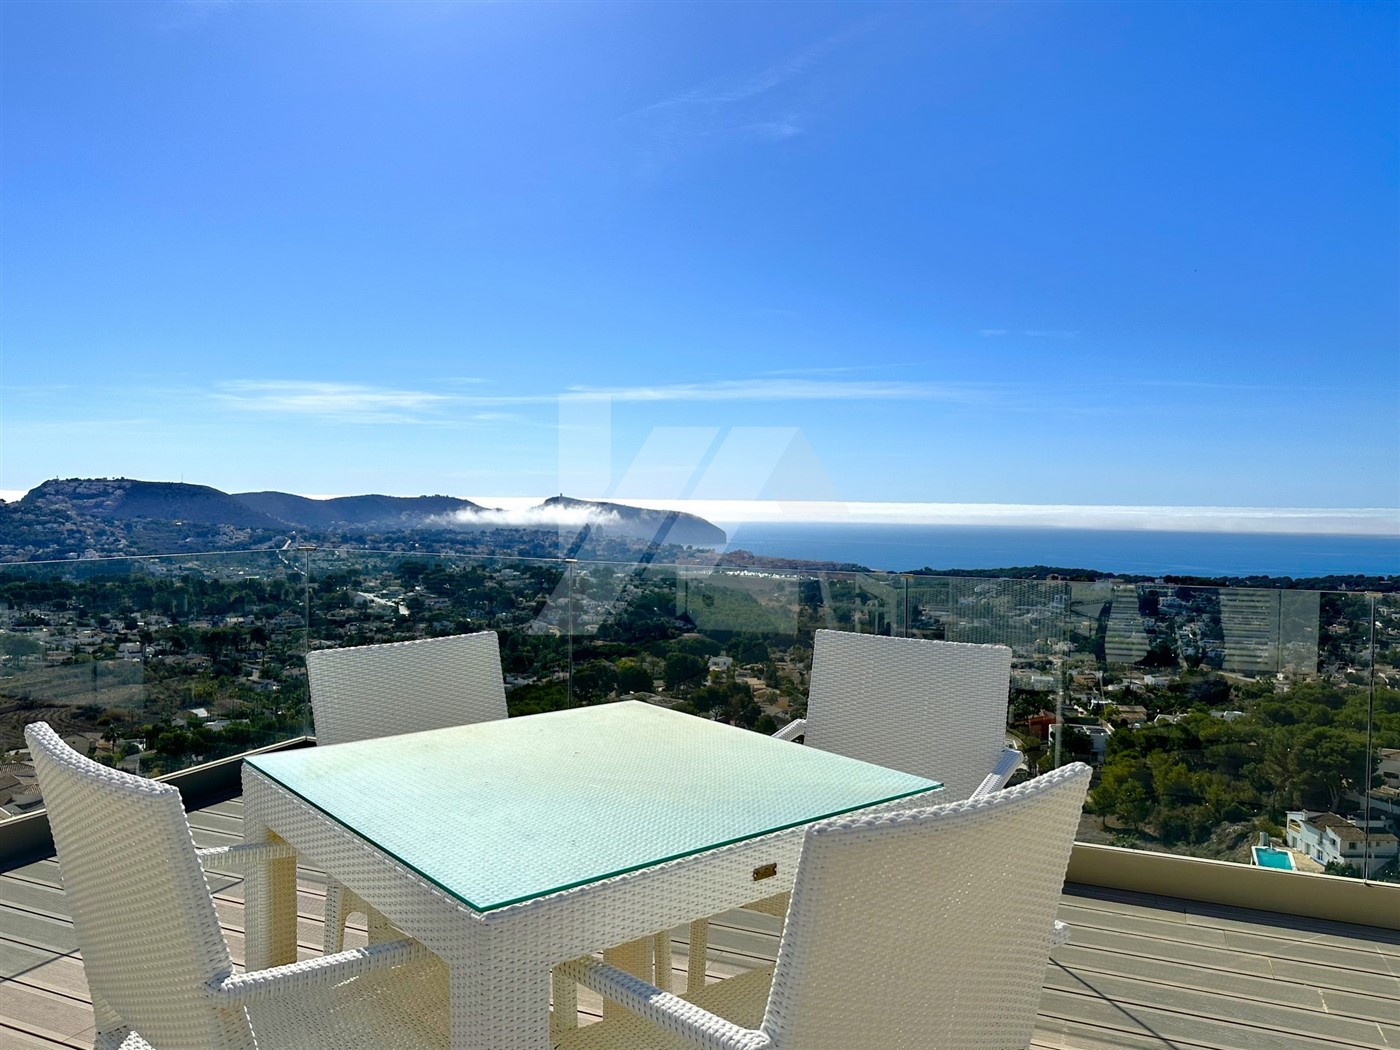 Exclusiva villa en venta con inigualables vistas al mar Mediterráneo en Moraira.